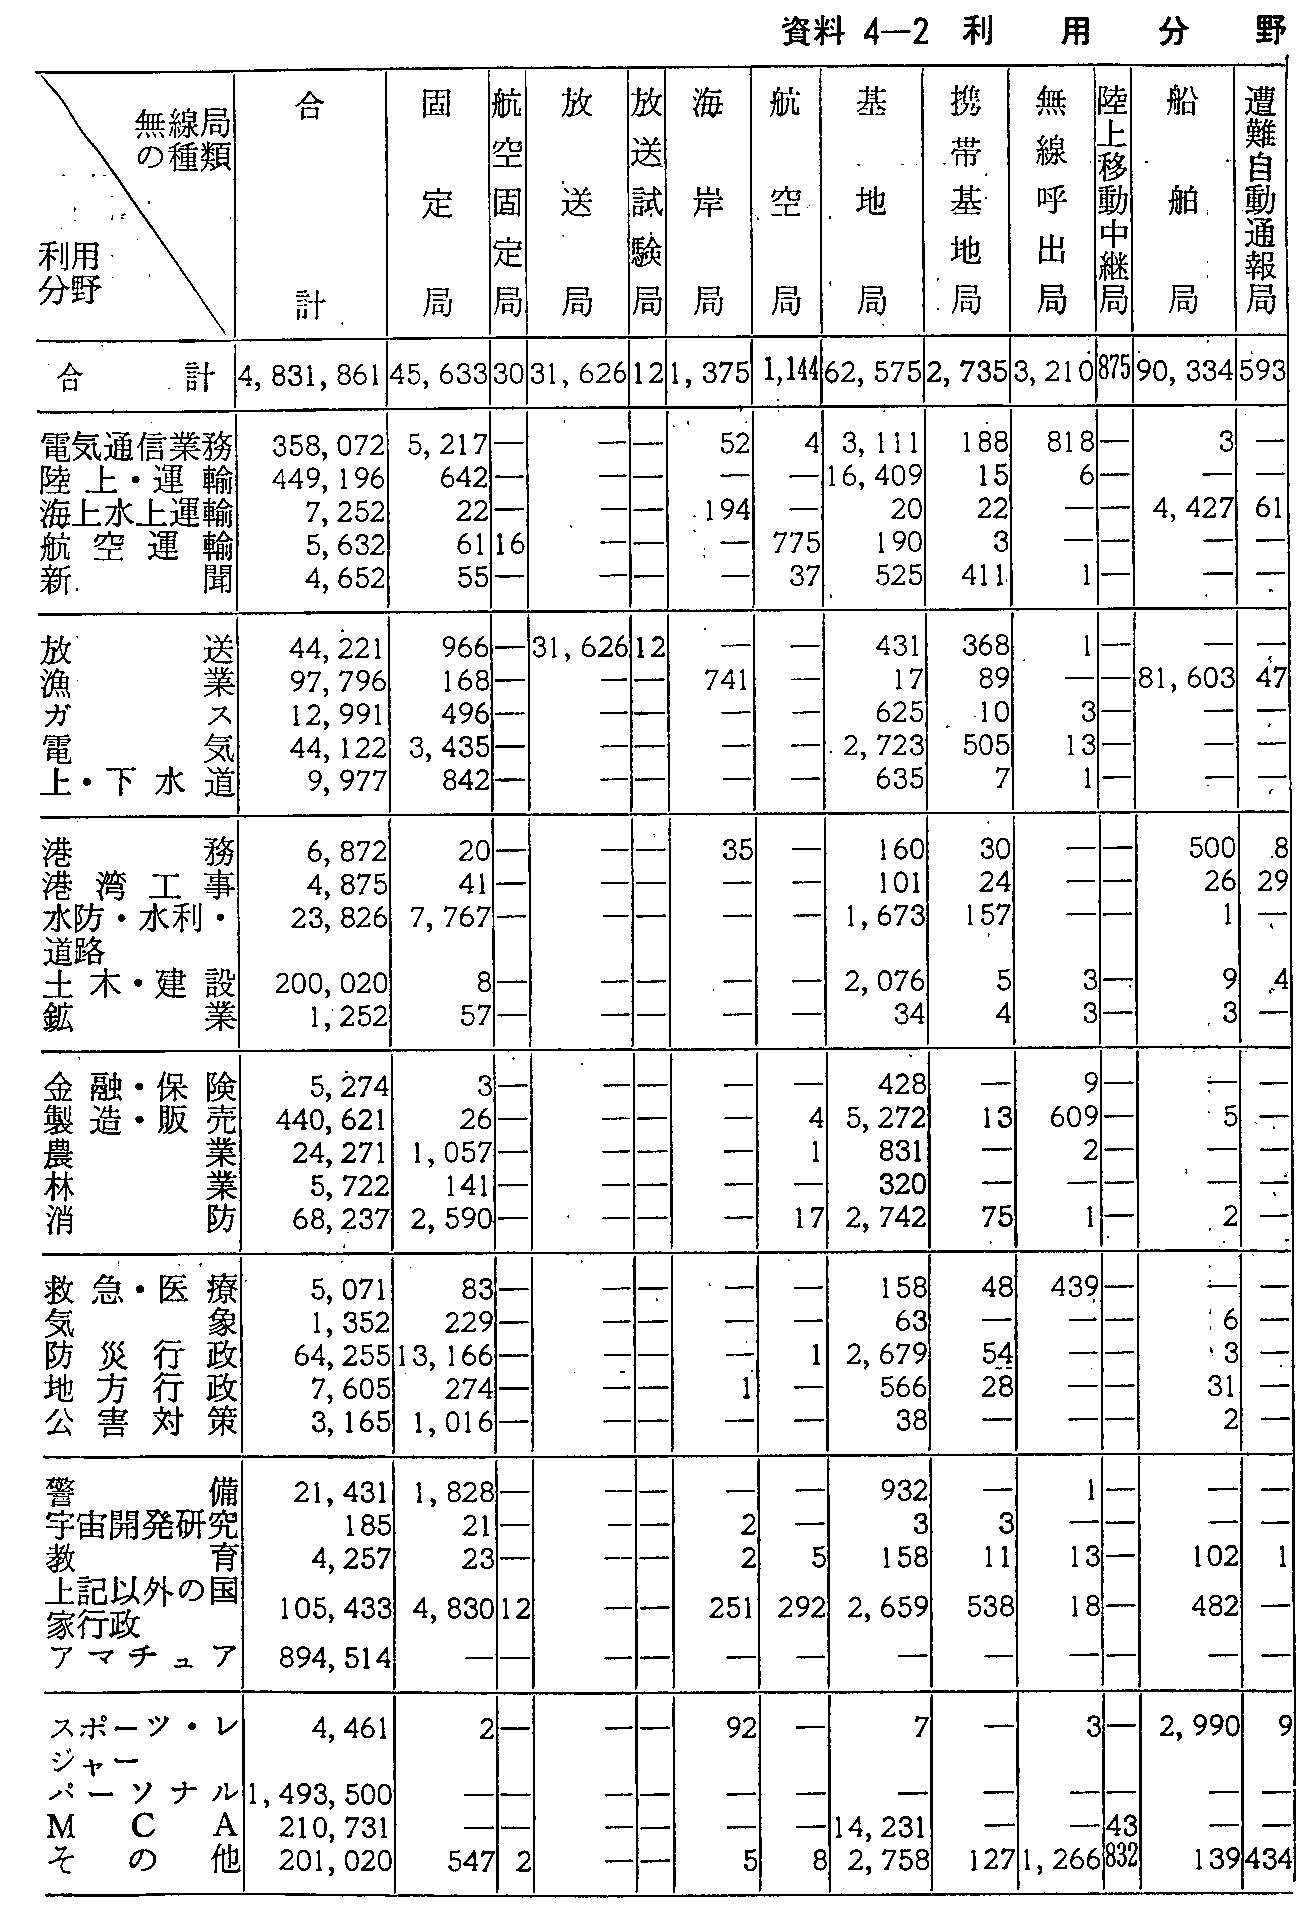 資料4-2 利用分野別無線局数(63年末現在)(1)